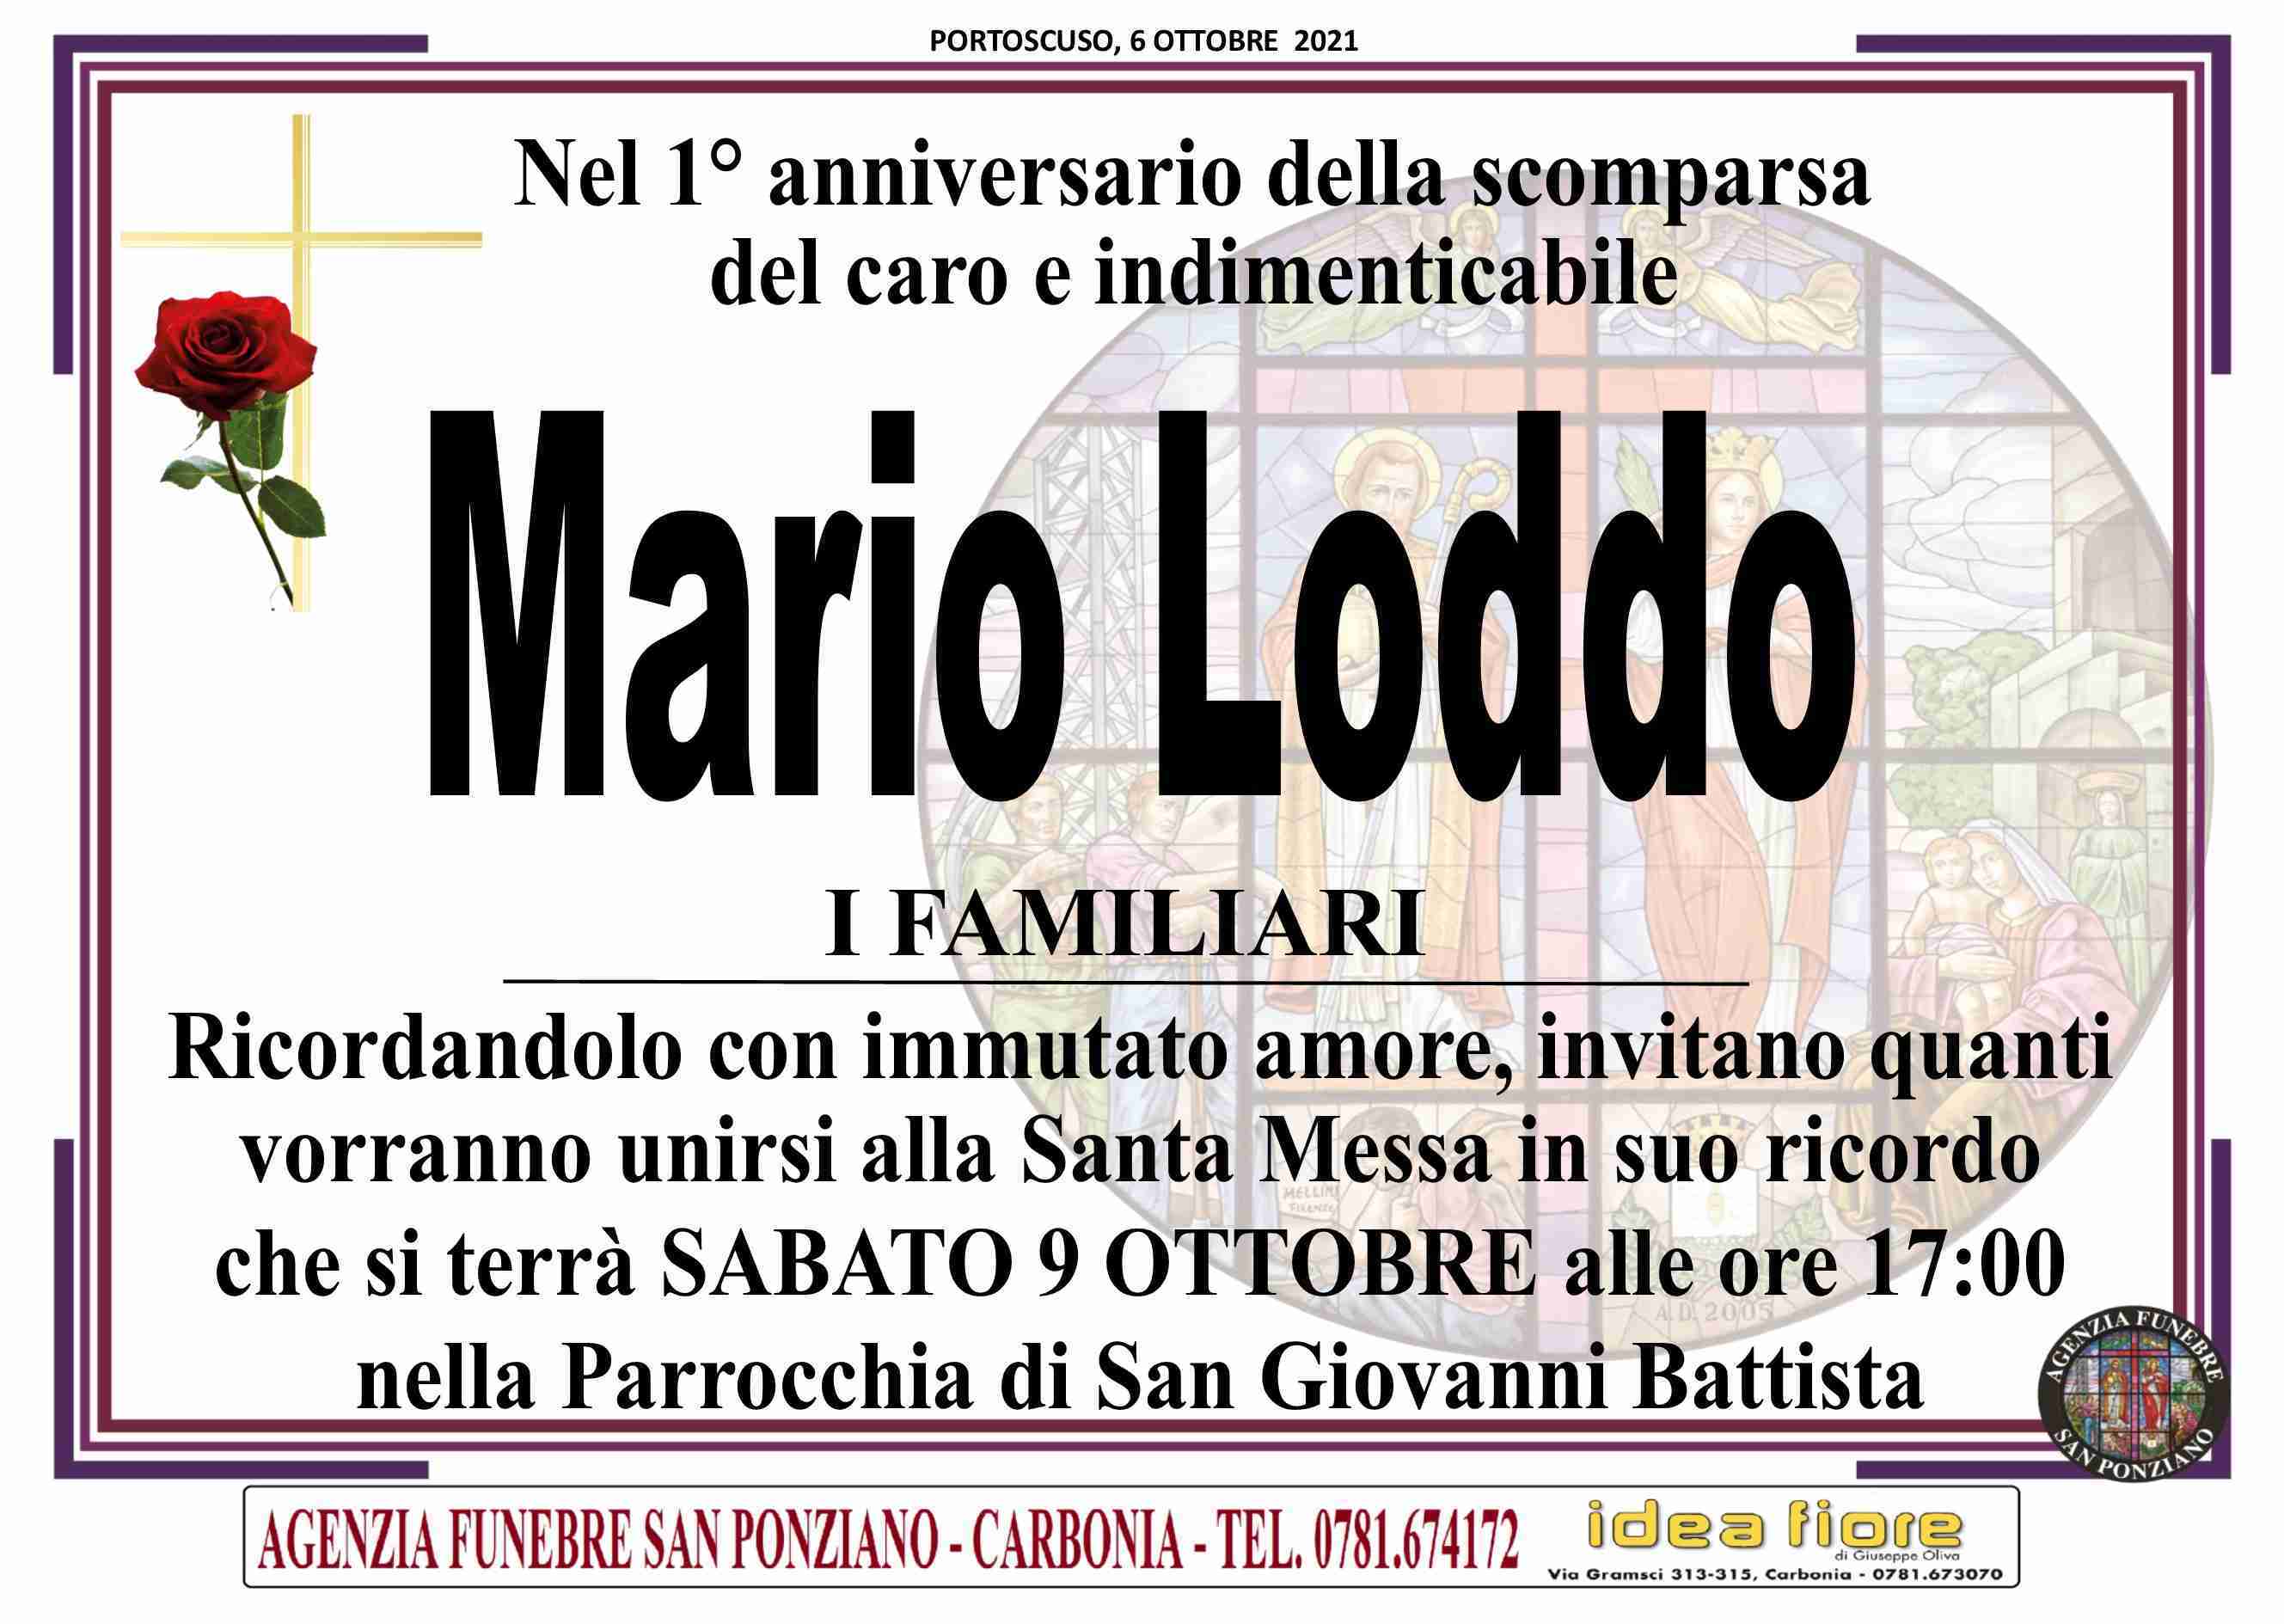 Mario Loddo